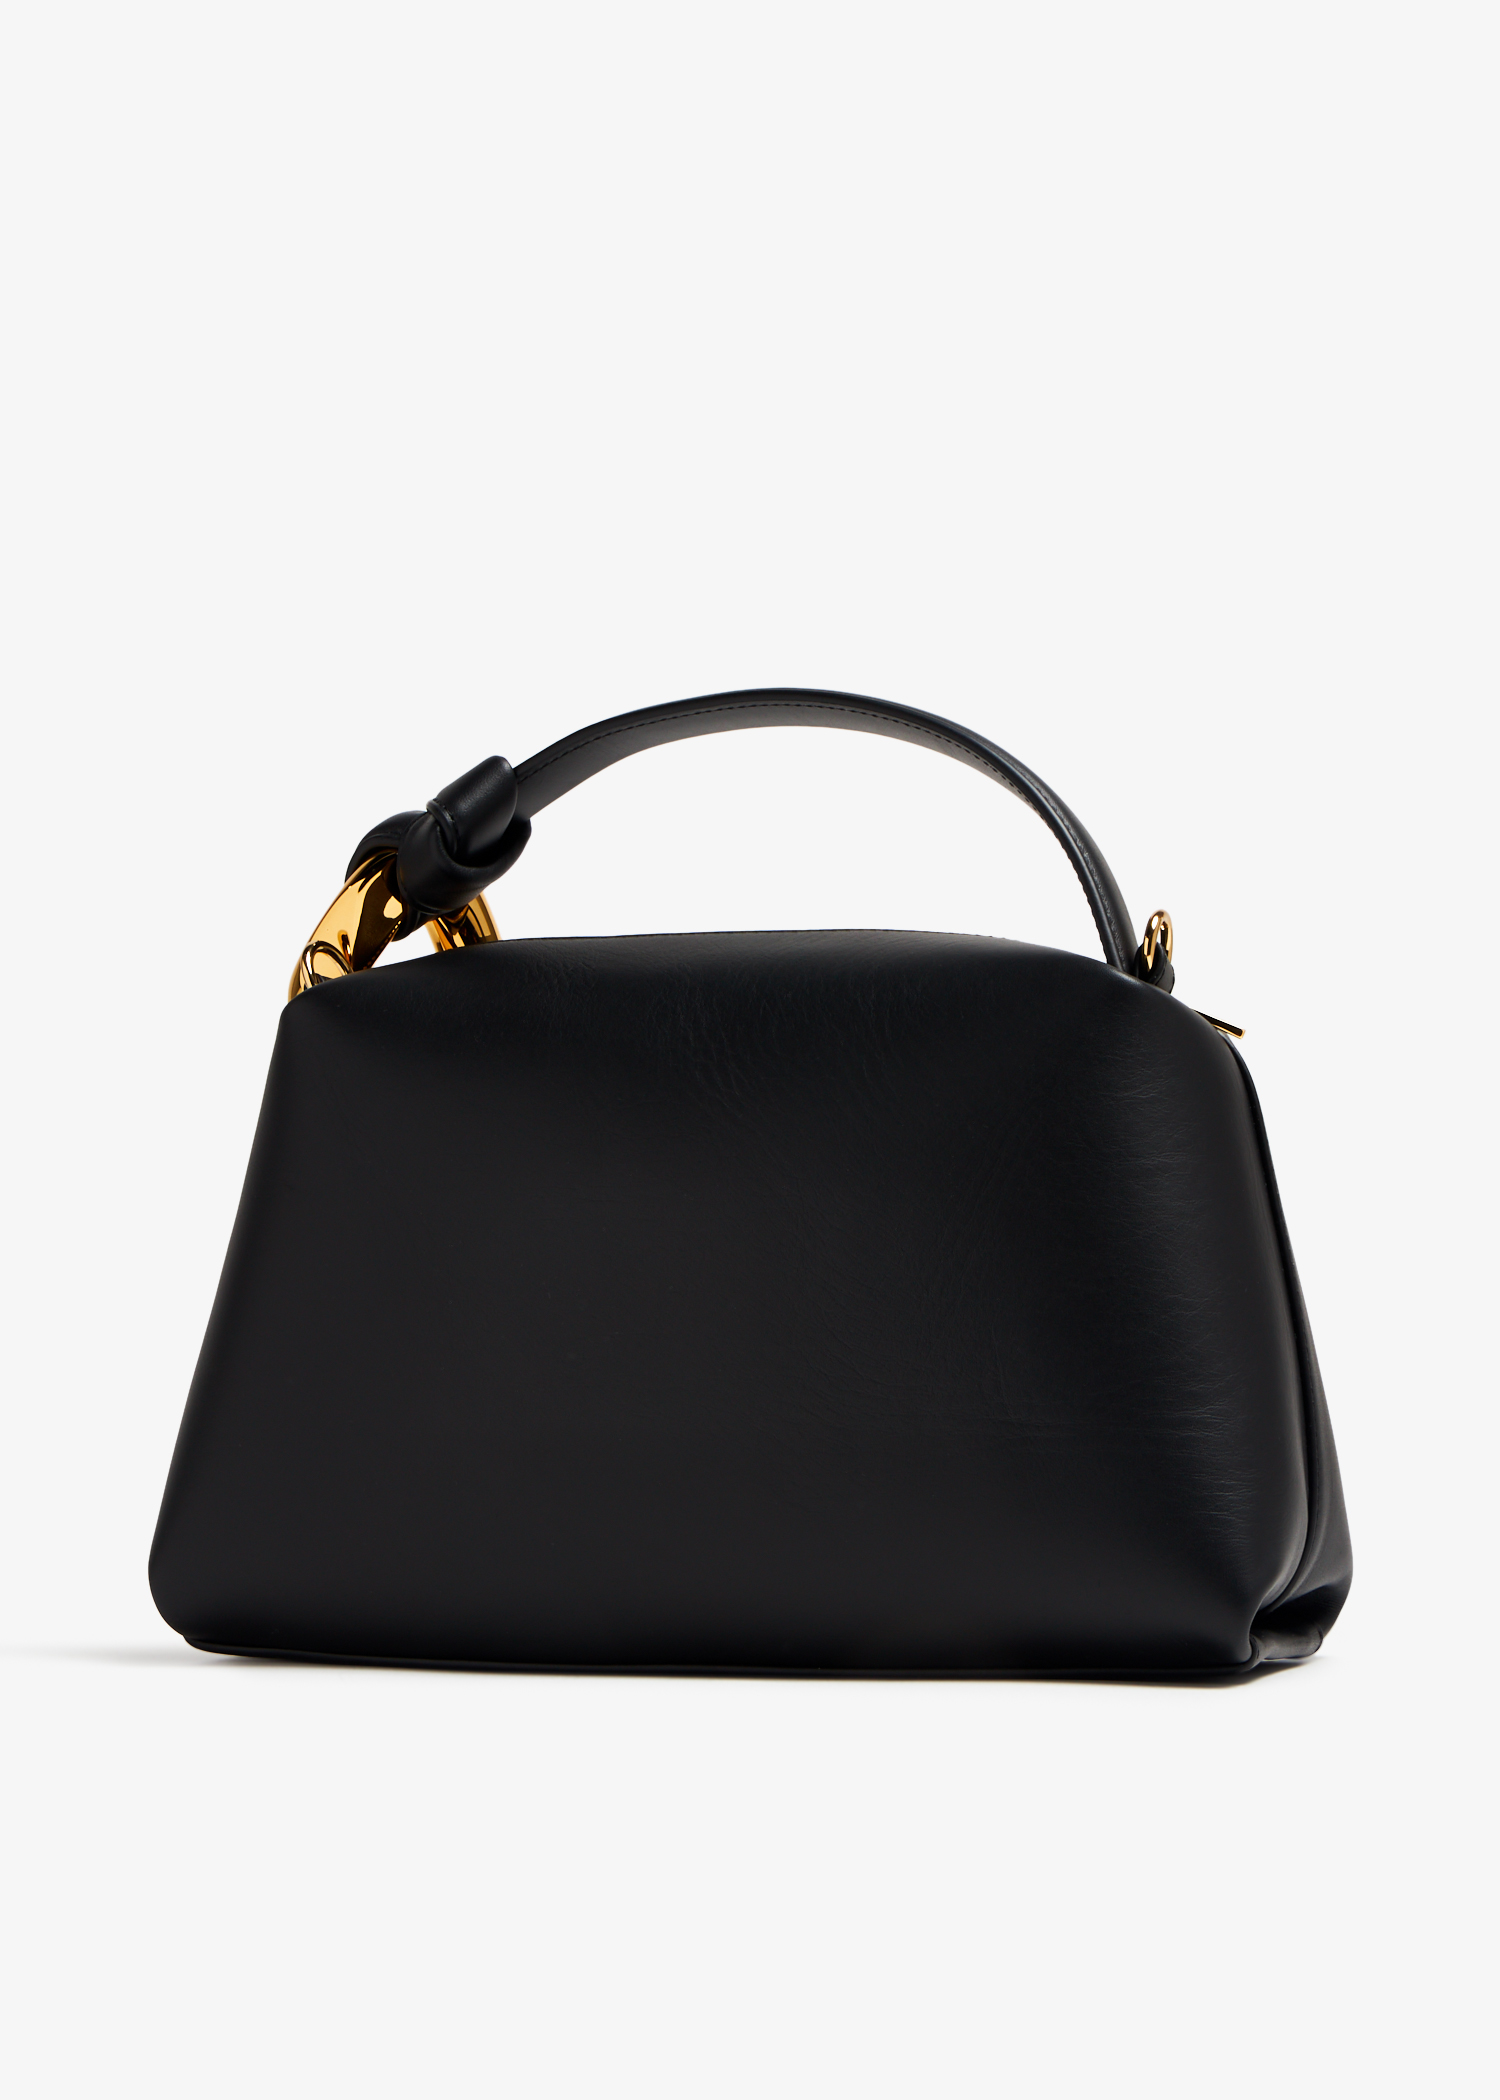 TININNA Universal Adjustable Shoulder Strap Handbag Shoulder Bag